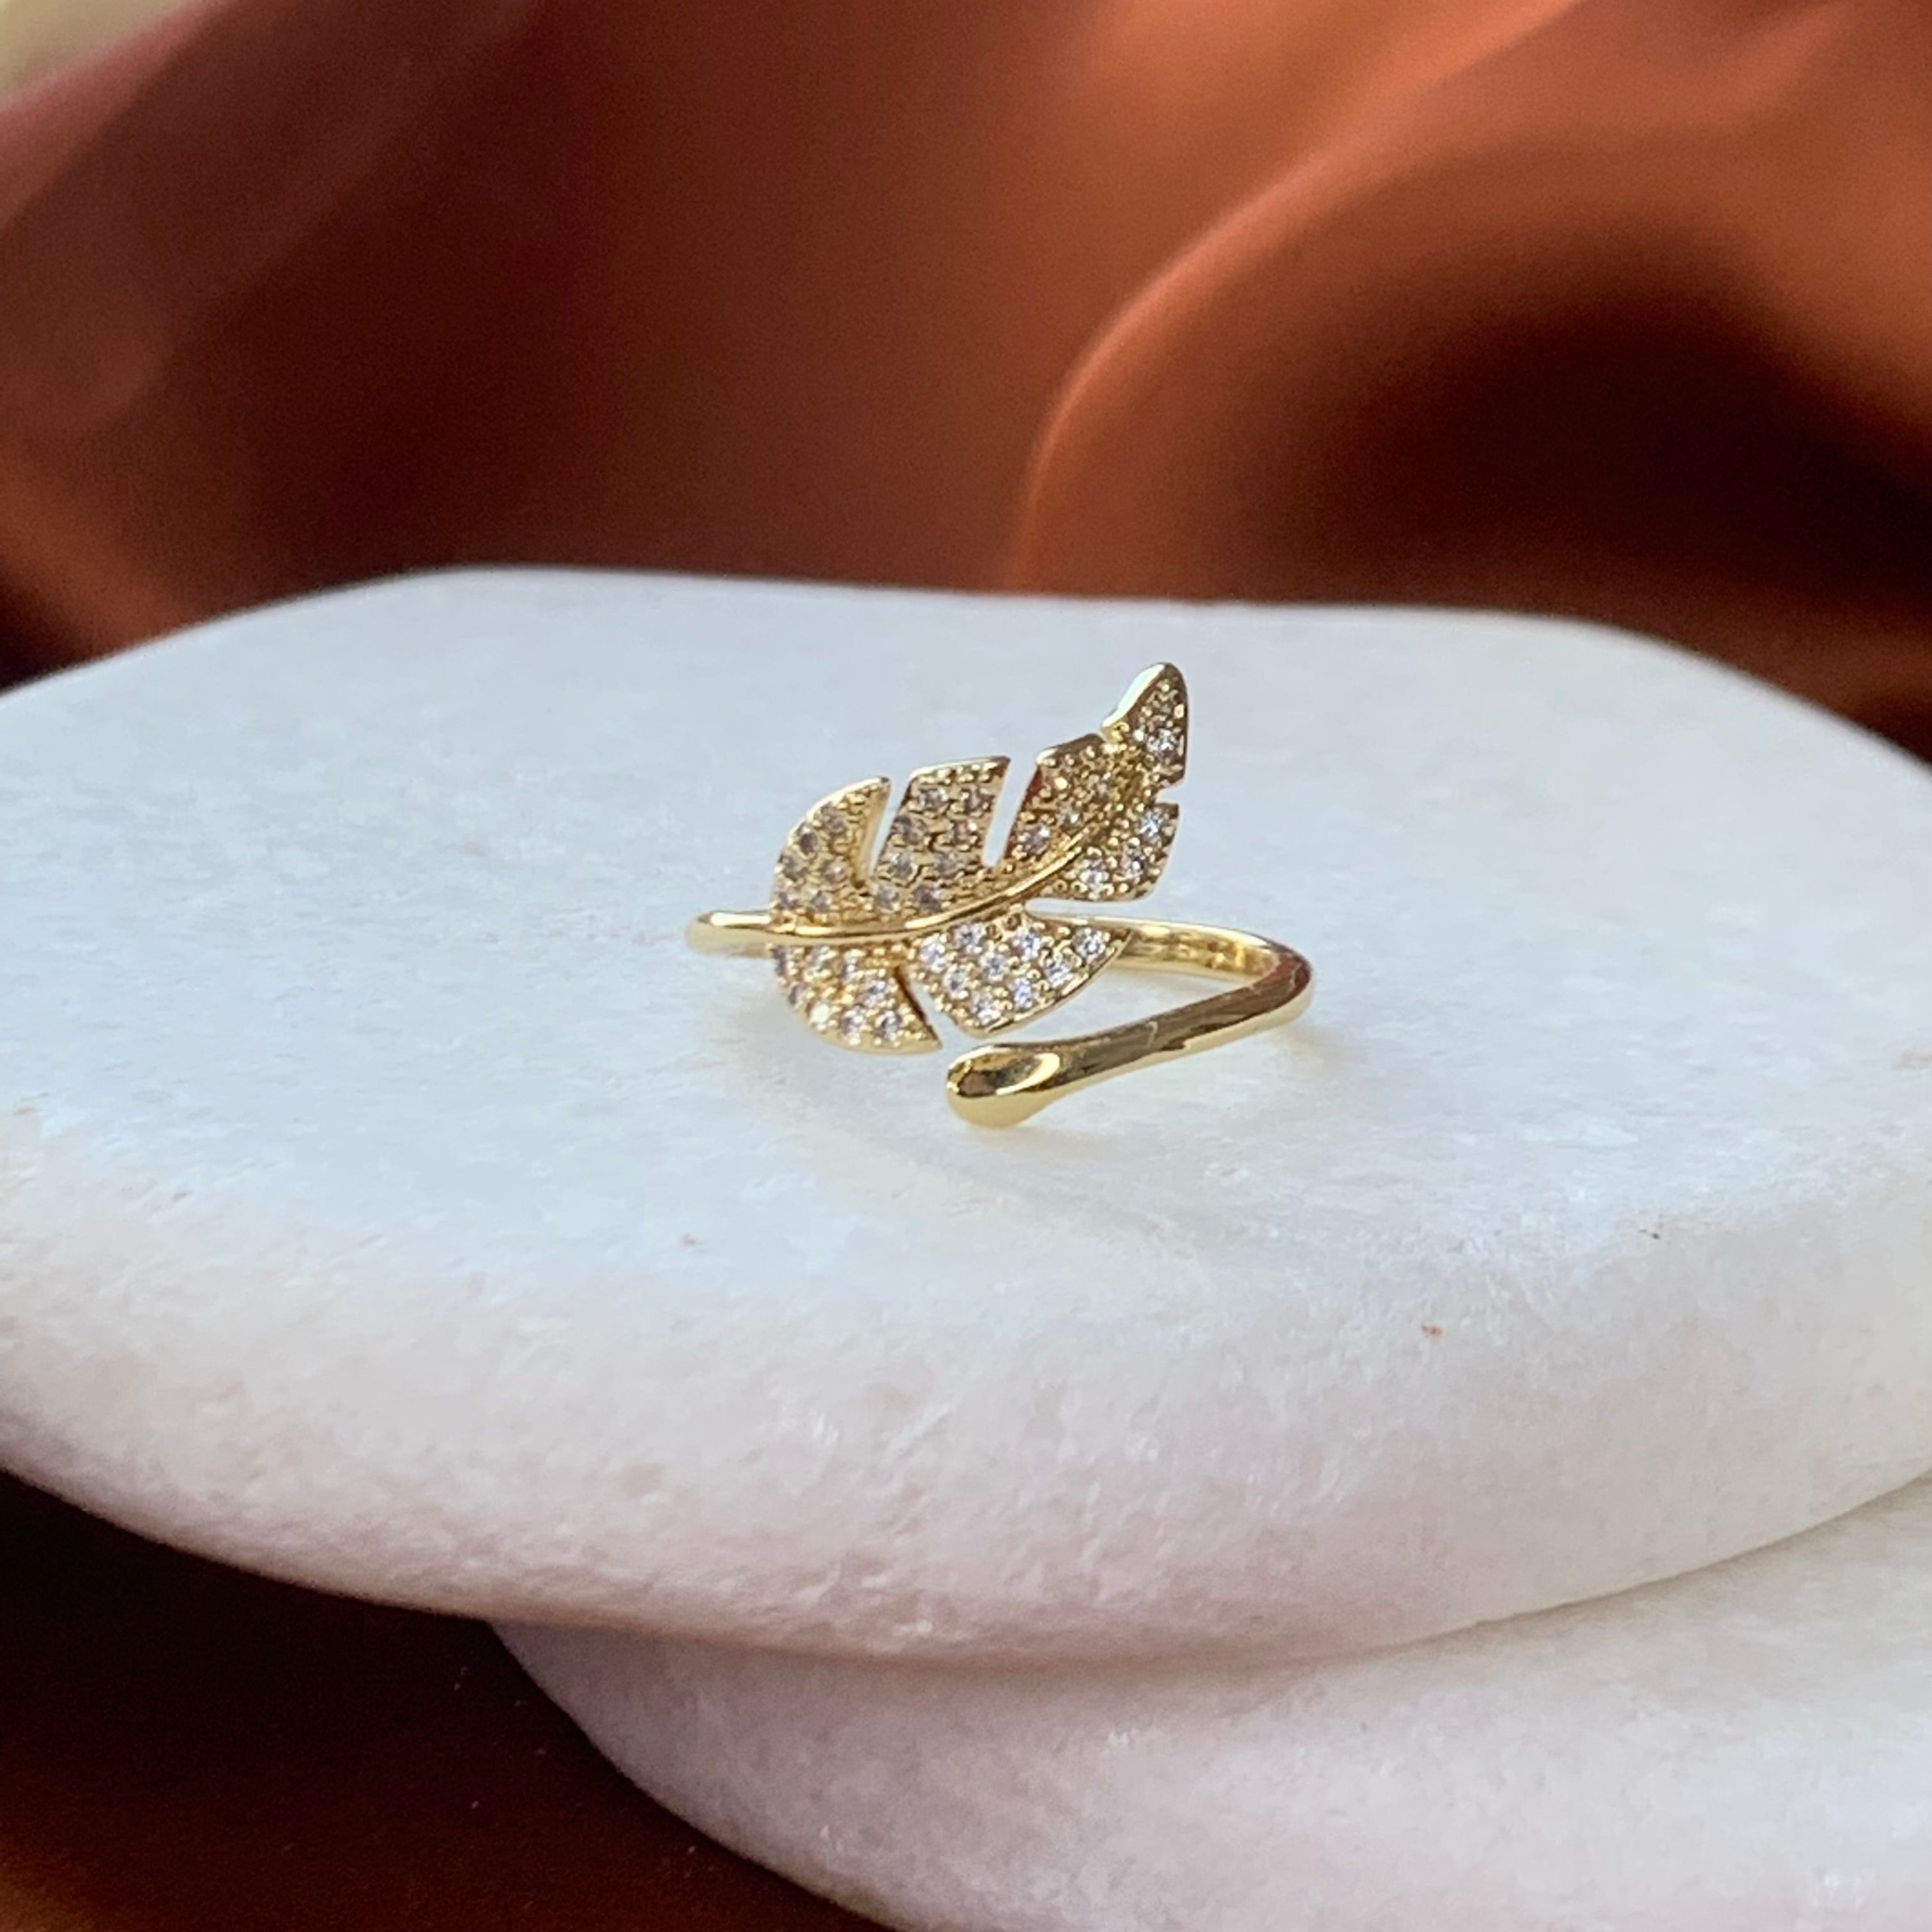 The Matte Leaf Gold Ring